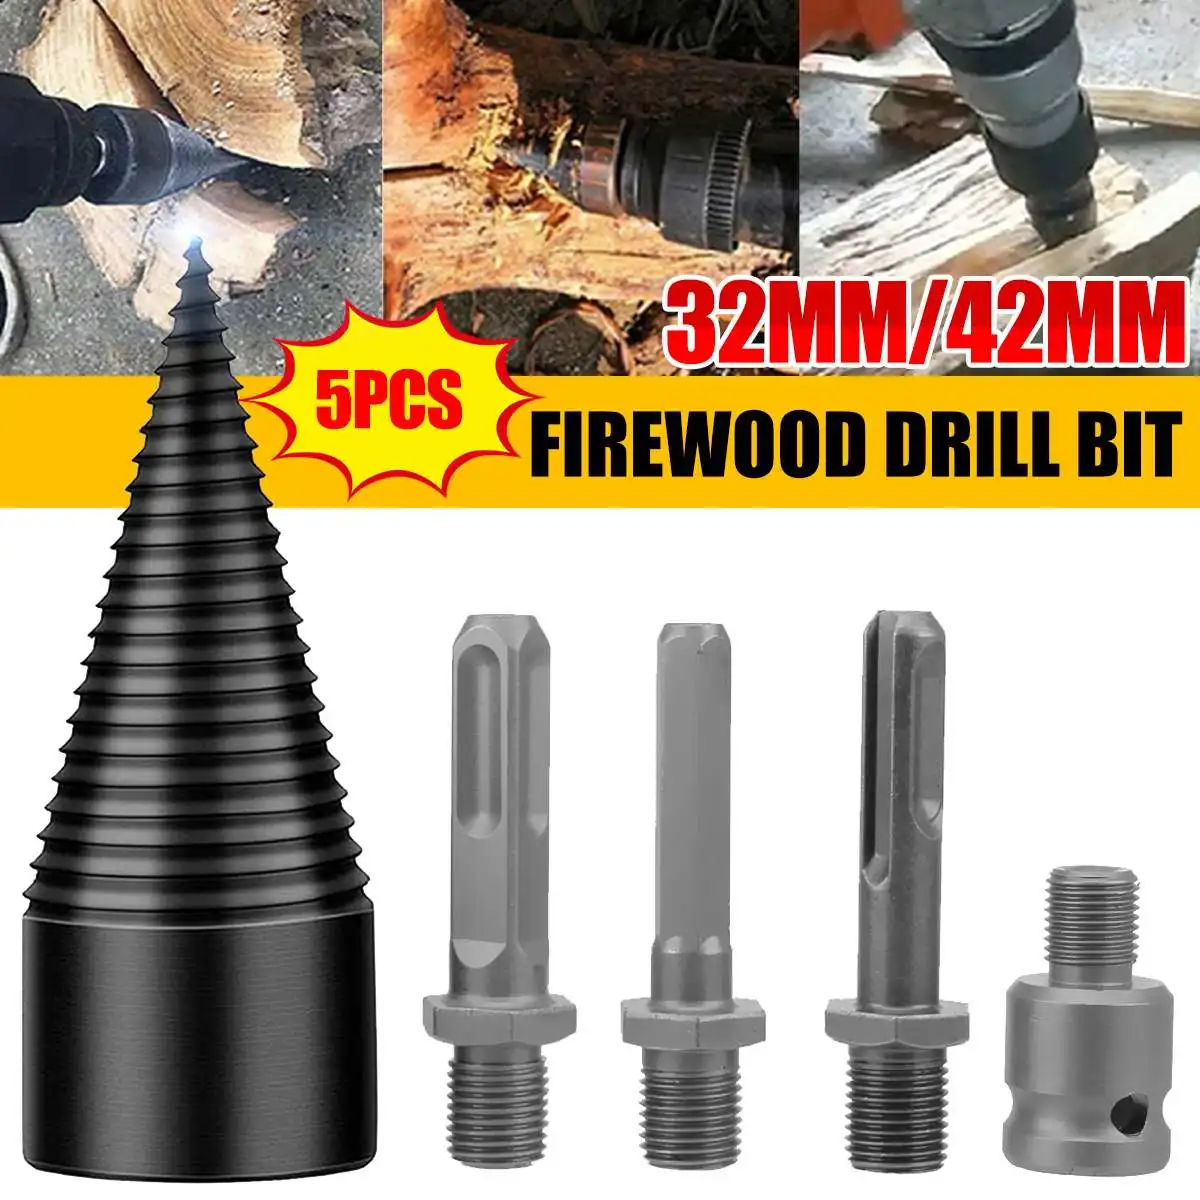 

5PCS 32mm/42mm Firewood Splitter Machine Drill Bit Wood Cone Punch Driver Square/Round/Hex Shank Drill Bit Split Drilling Tool